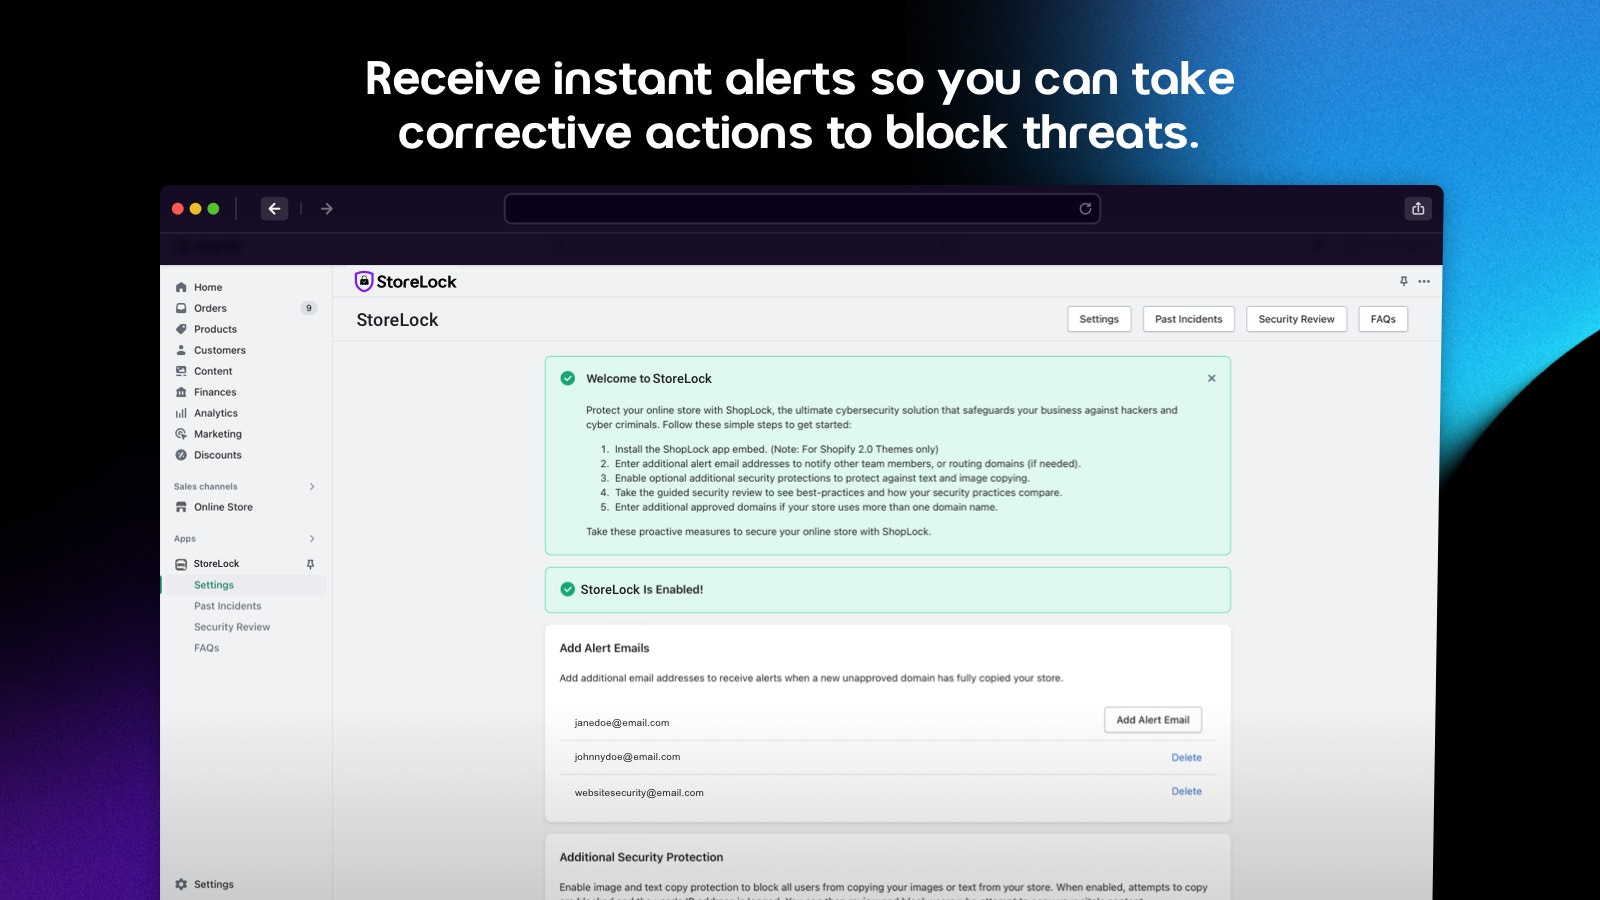 Recevez des alertes instantanées pour pouvoir bloquer les menaces nuisibles.